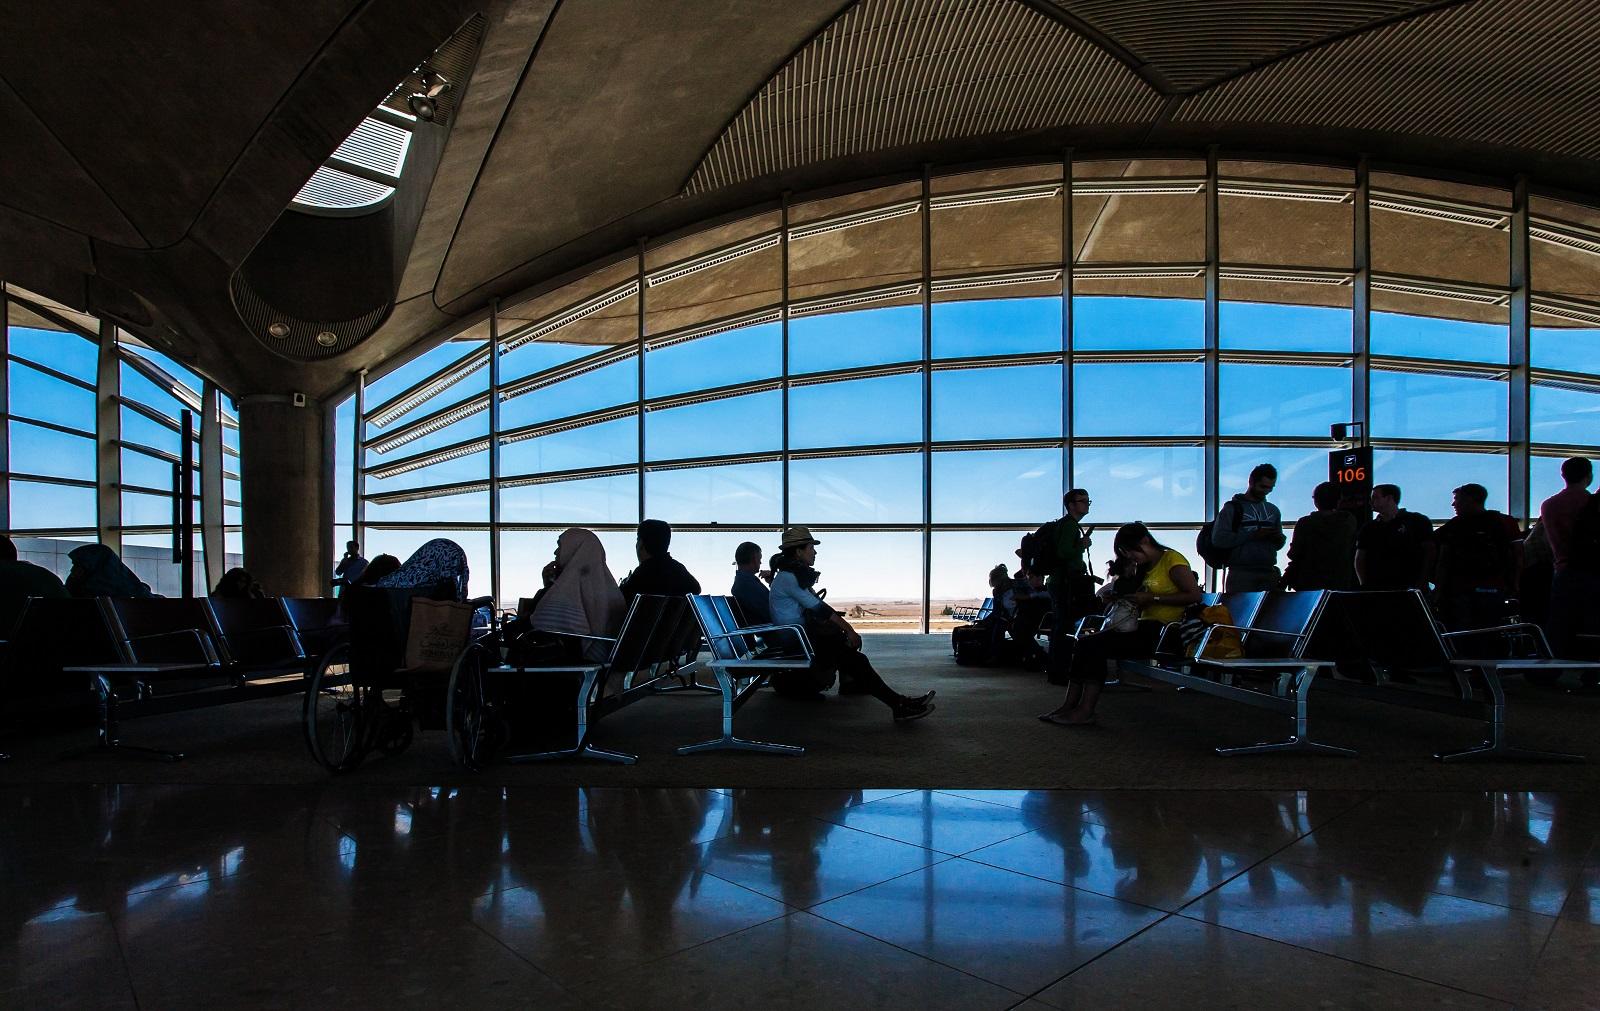 قاعة انتظار المسافرين في مطار الملكة علياء الدولي. (shutterstock)